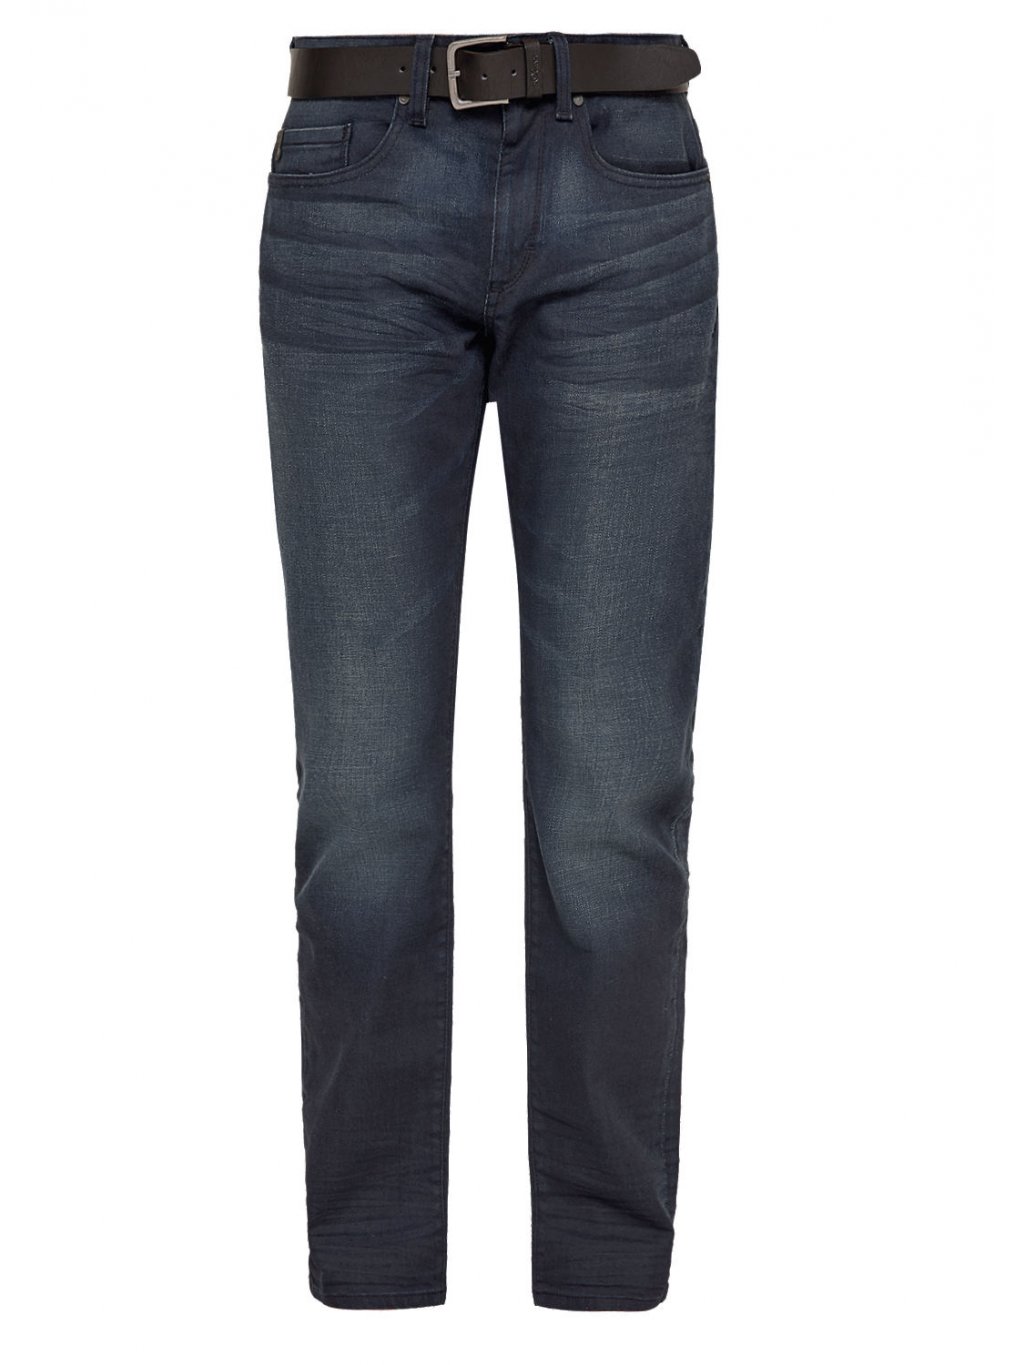 s.Oliver pánské džíny s opaskem Close Slim modré (Velikost 38/34)